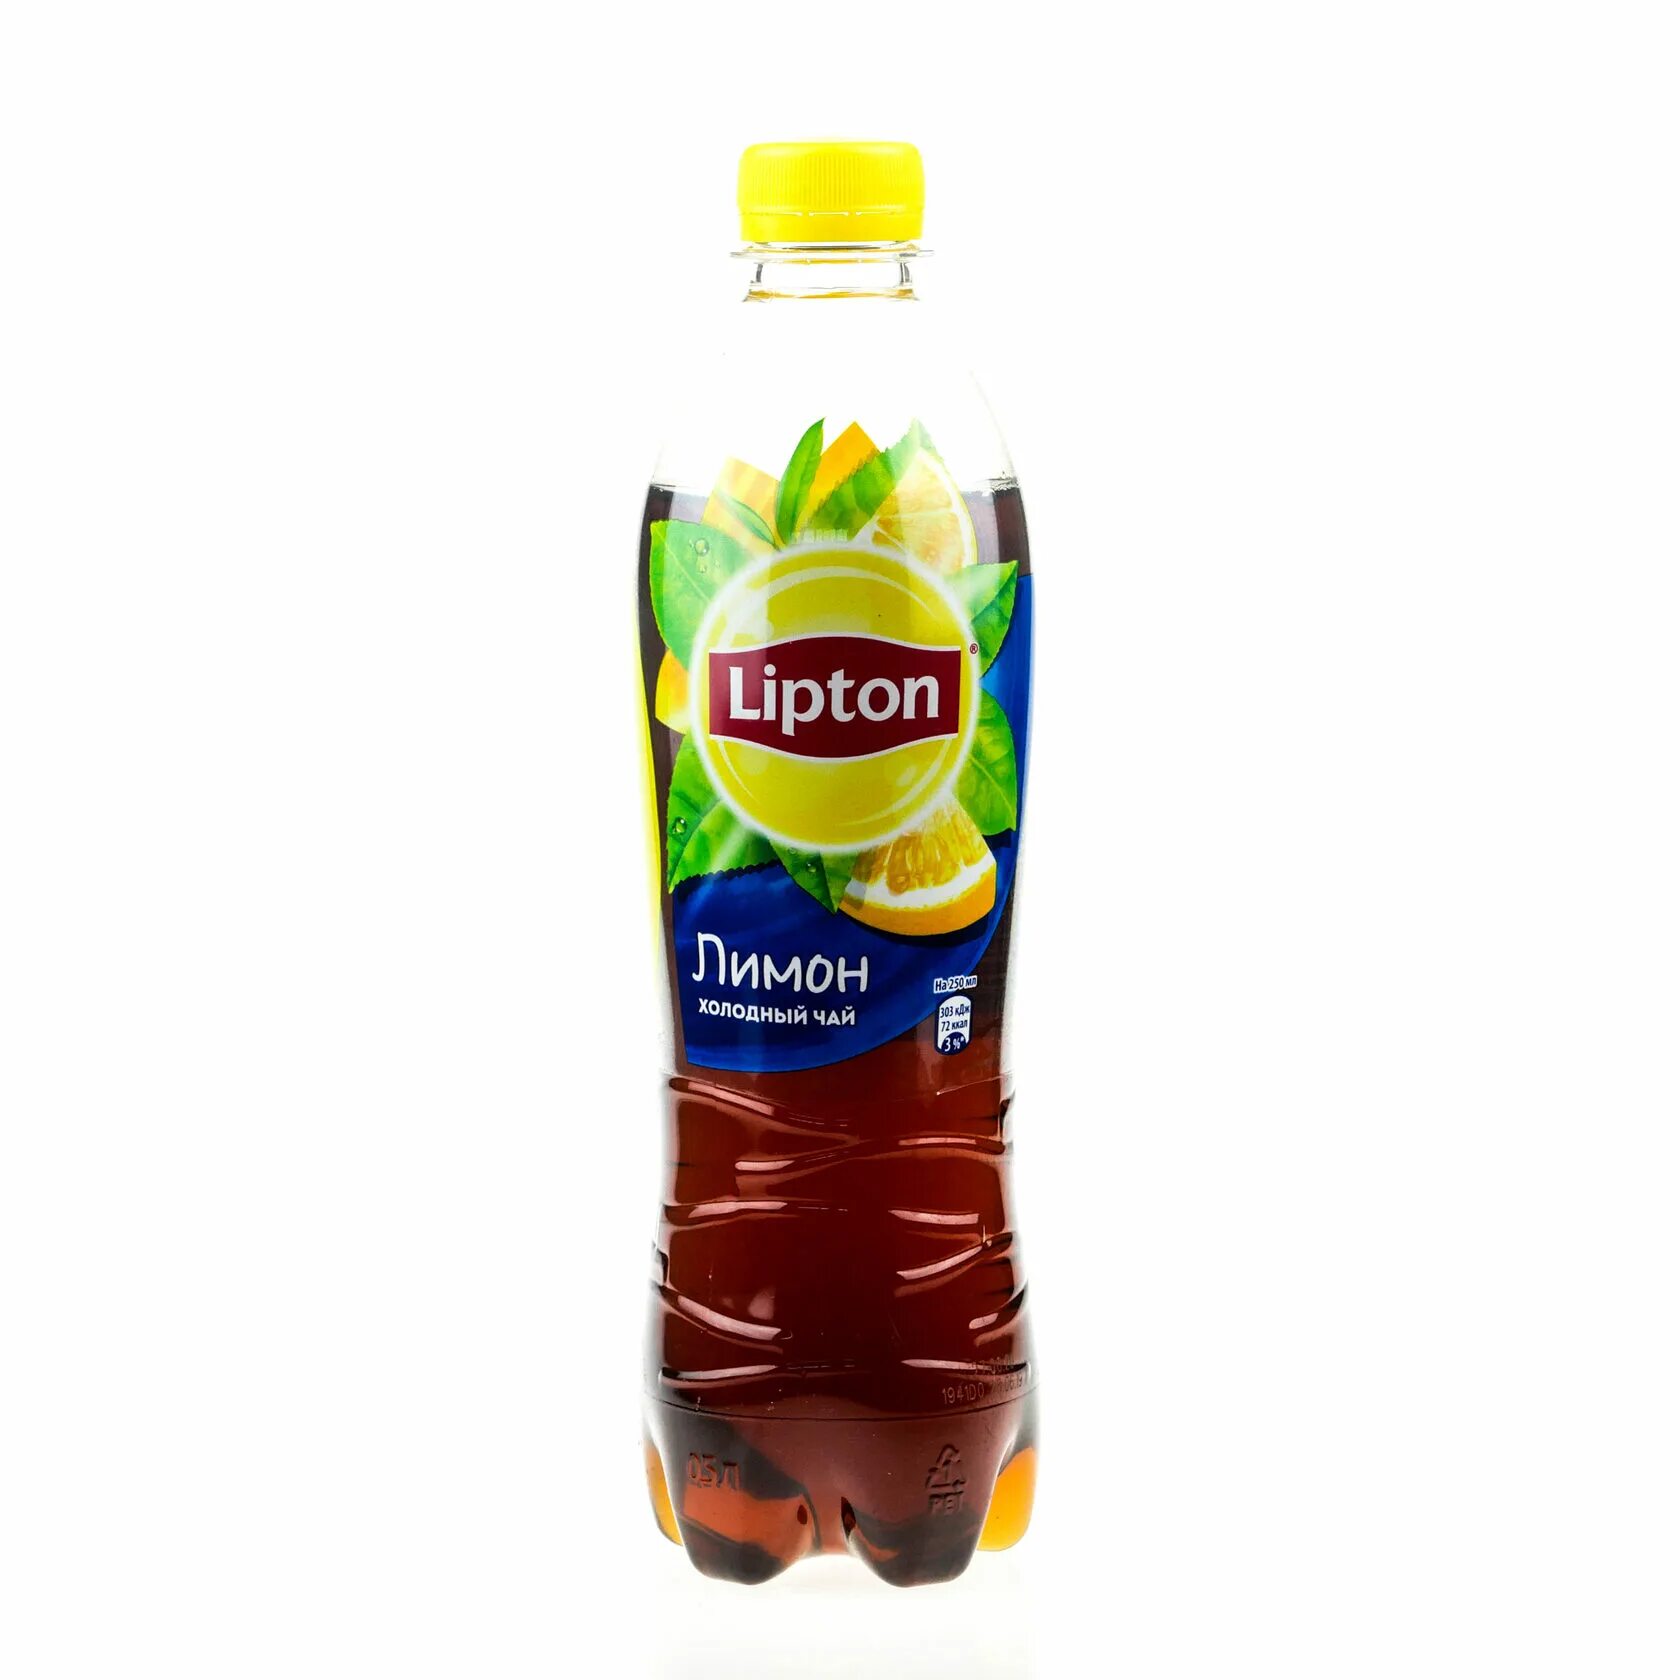 Чай Липтон холодный лимон 0,5л. Липтон холодный чай черный. Липтон лимон холодный чай ПЭТ 0,5л. Липтон 0.5 л. Липтон 0.5